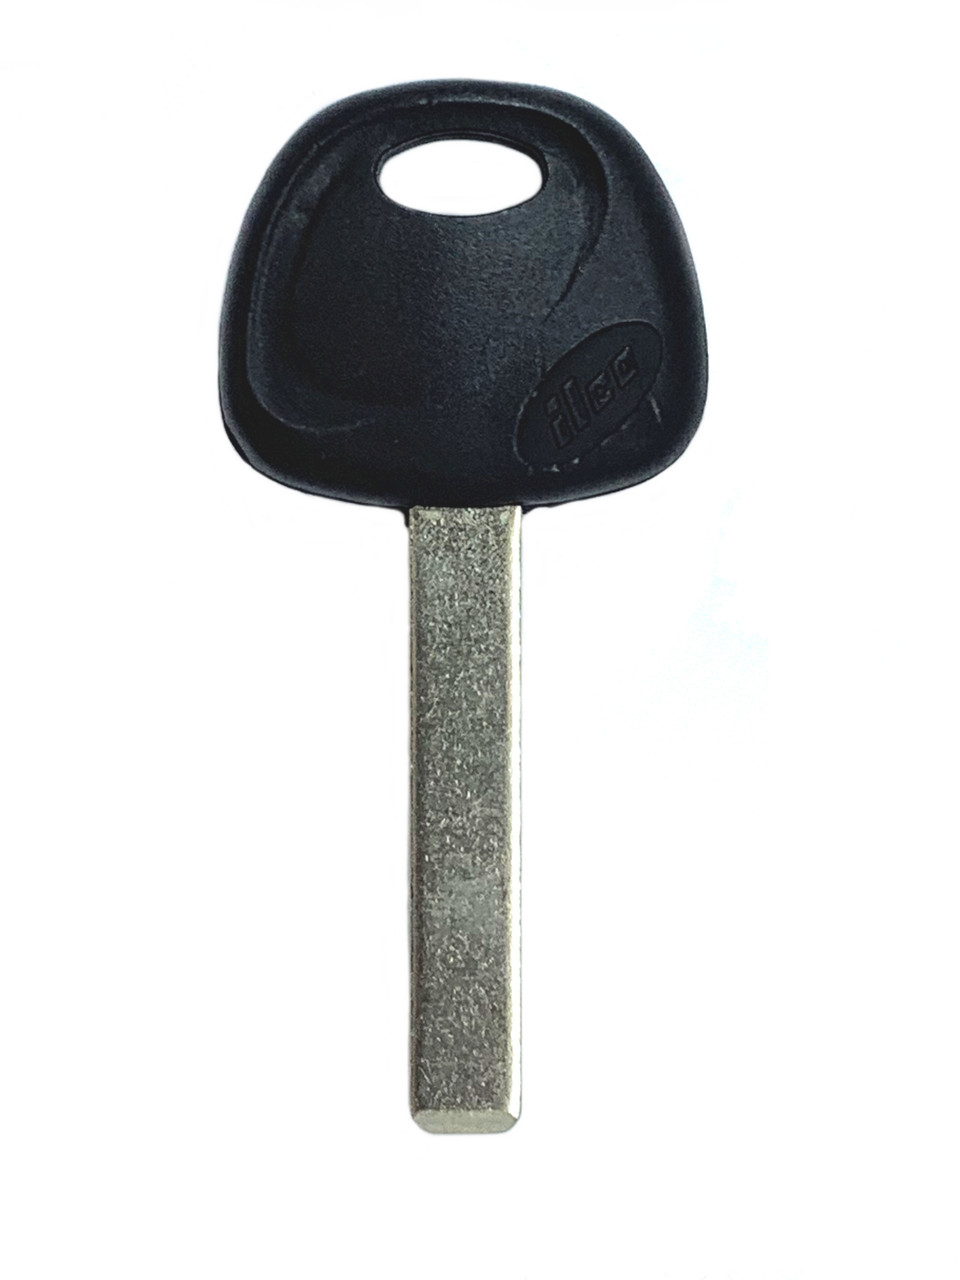 2011-2012 Kia Sportage X280 HY15 Automotive Key Blank Blanks Keys 